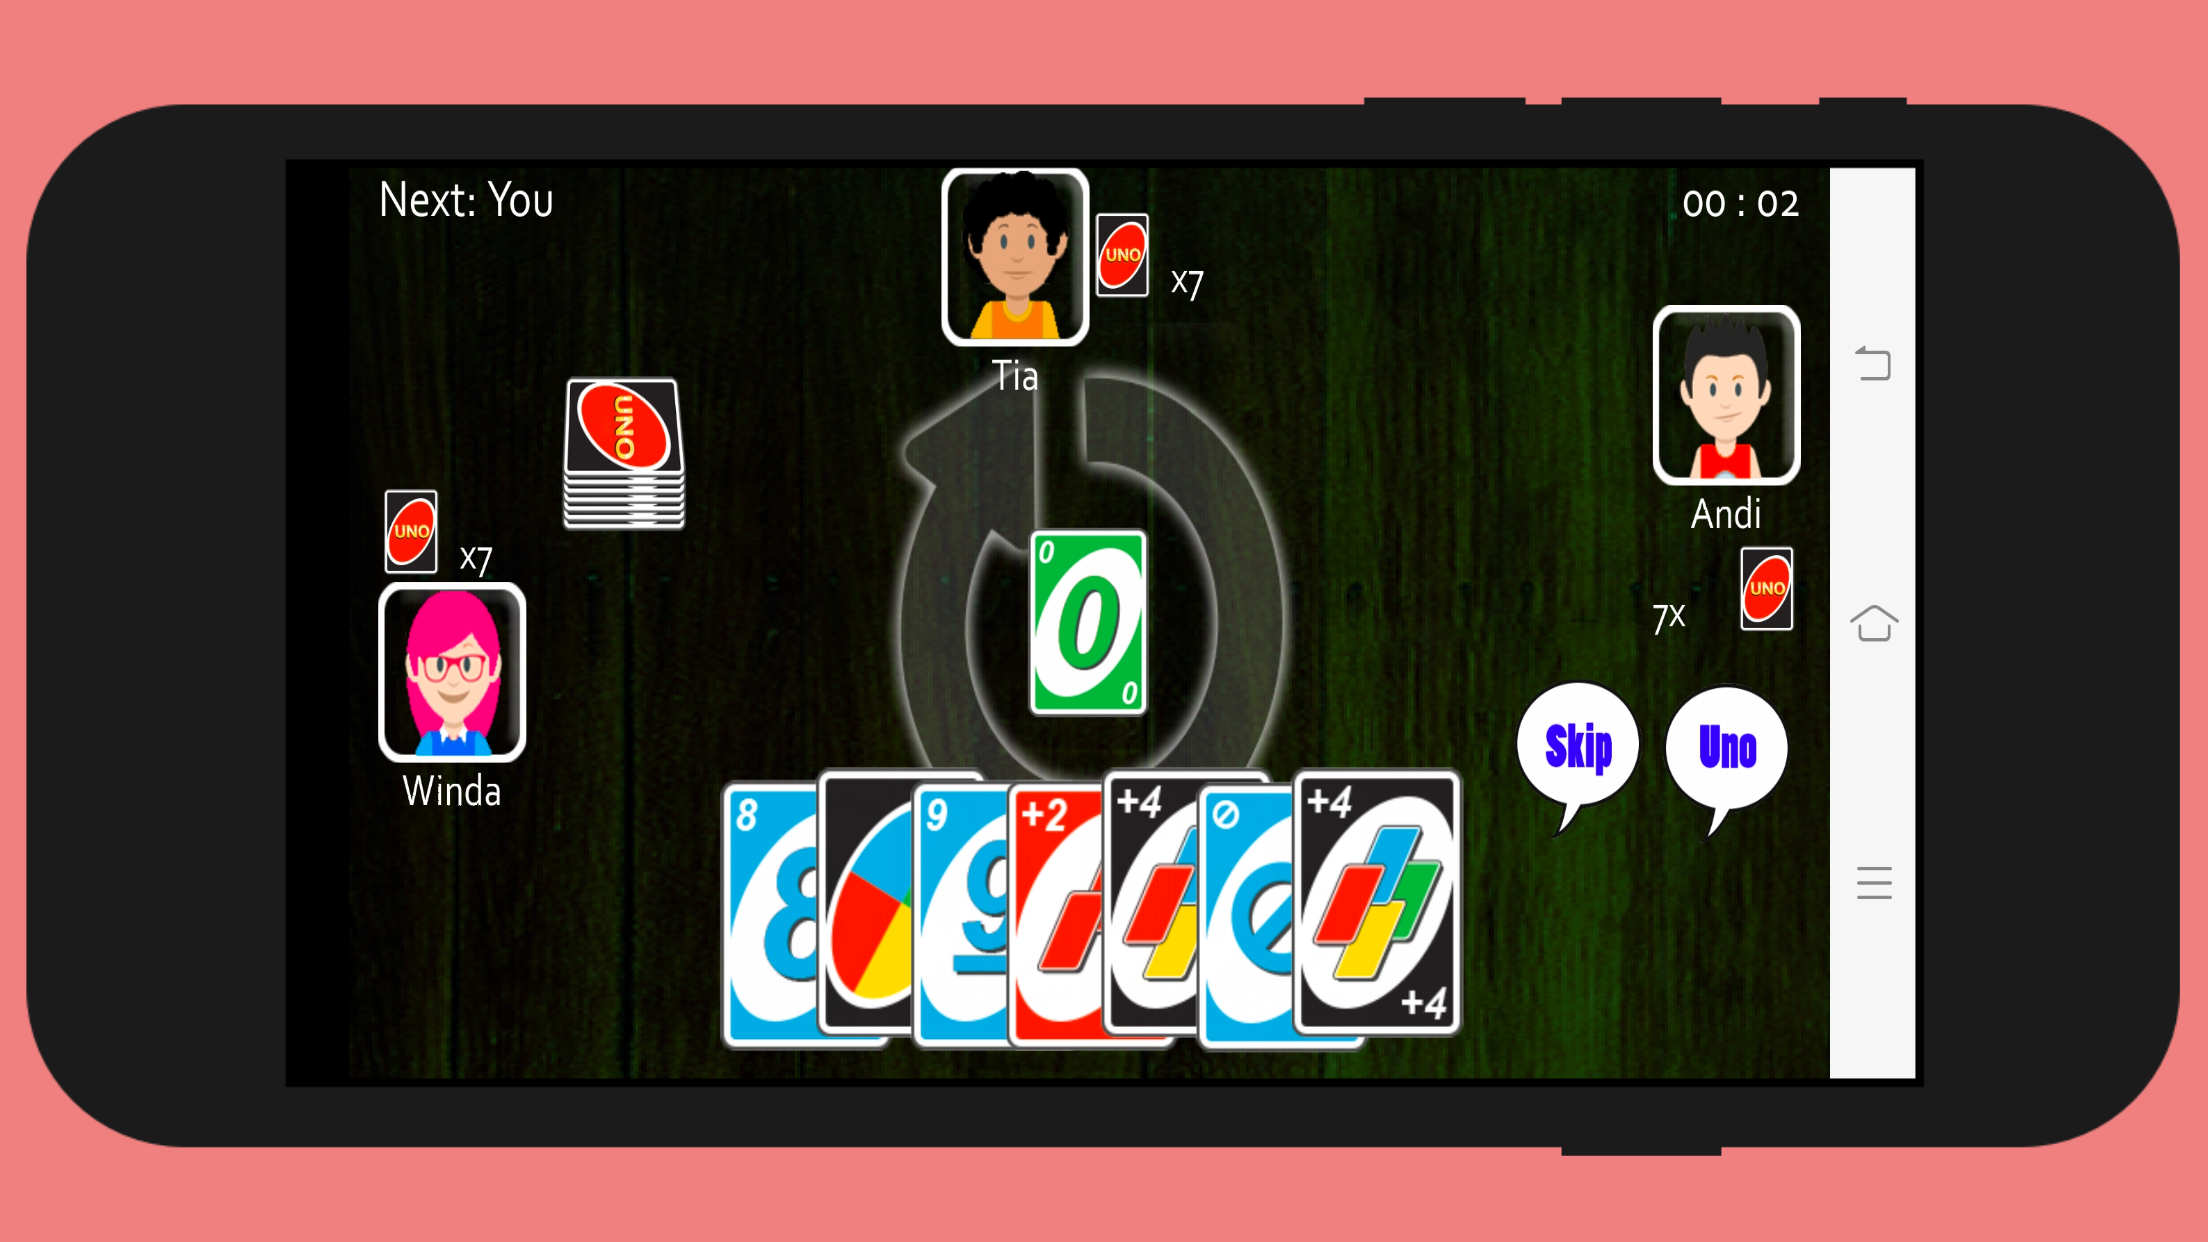 Uno Offline 2019 screenshot game